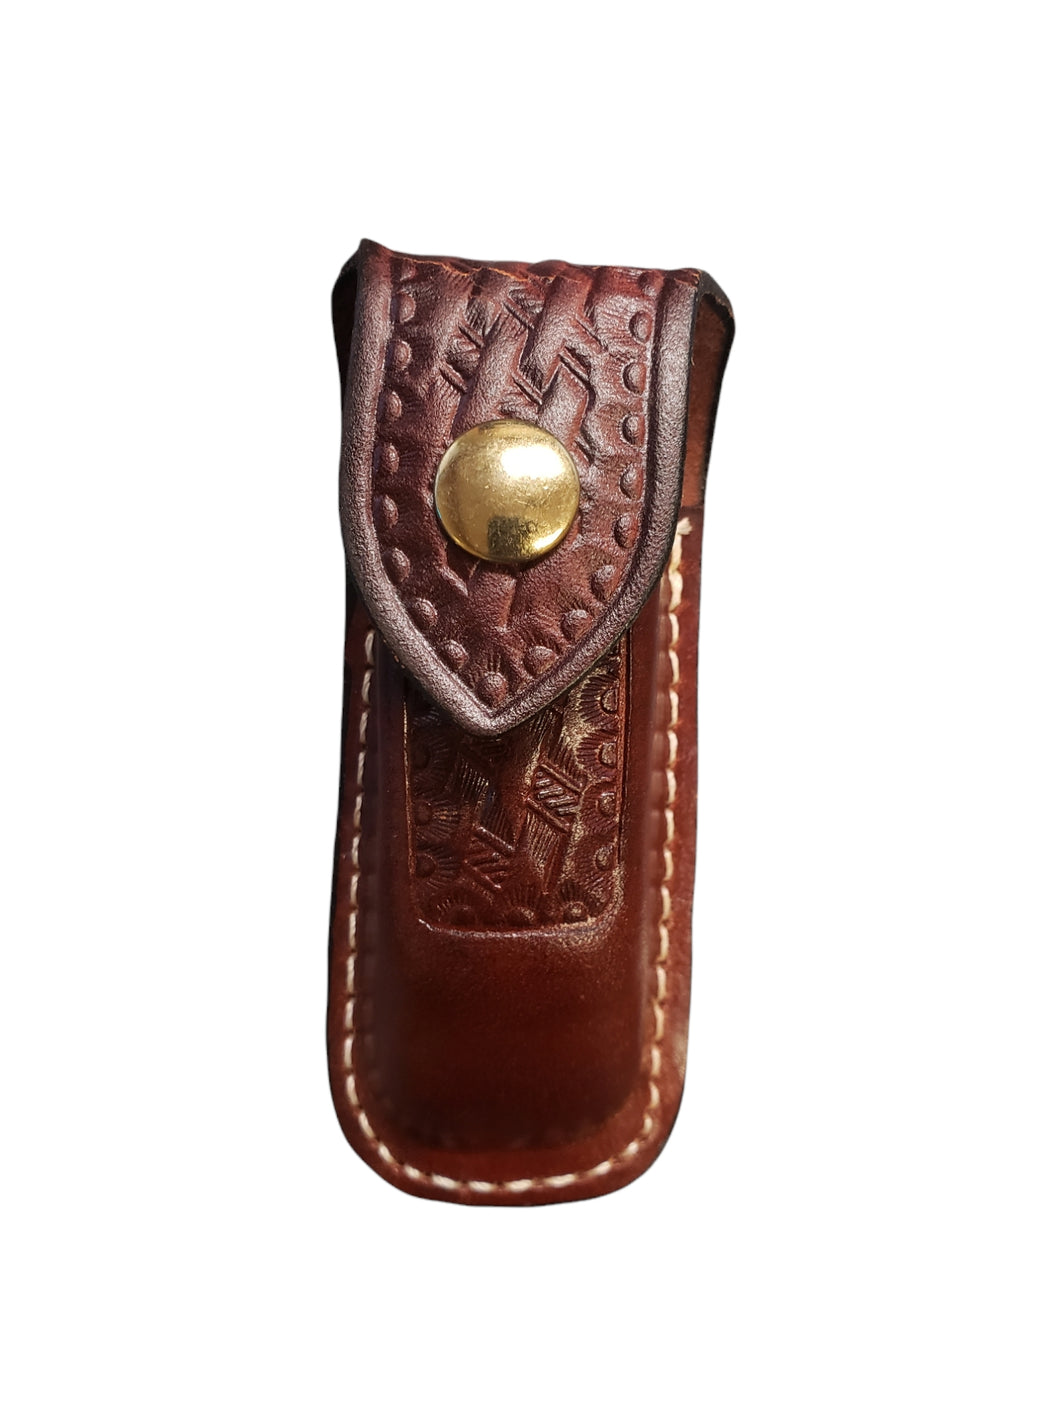 Genuine Leather Pocket Knife Belt Holster - 4.5